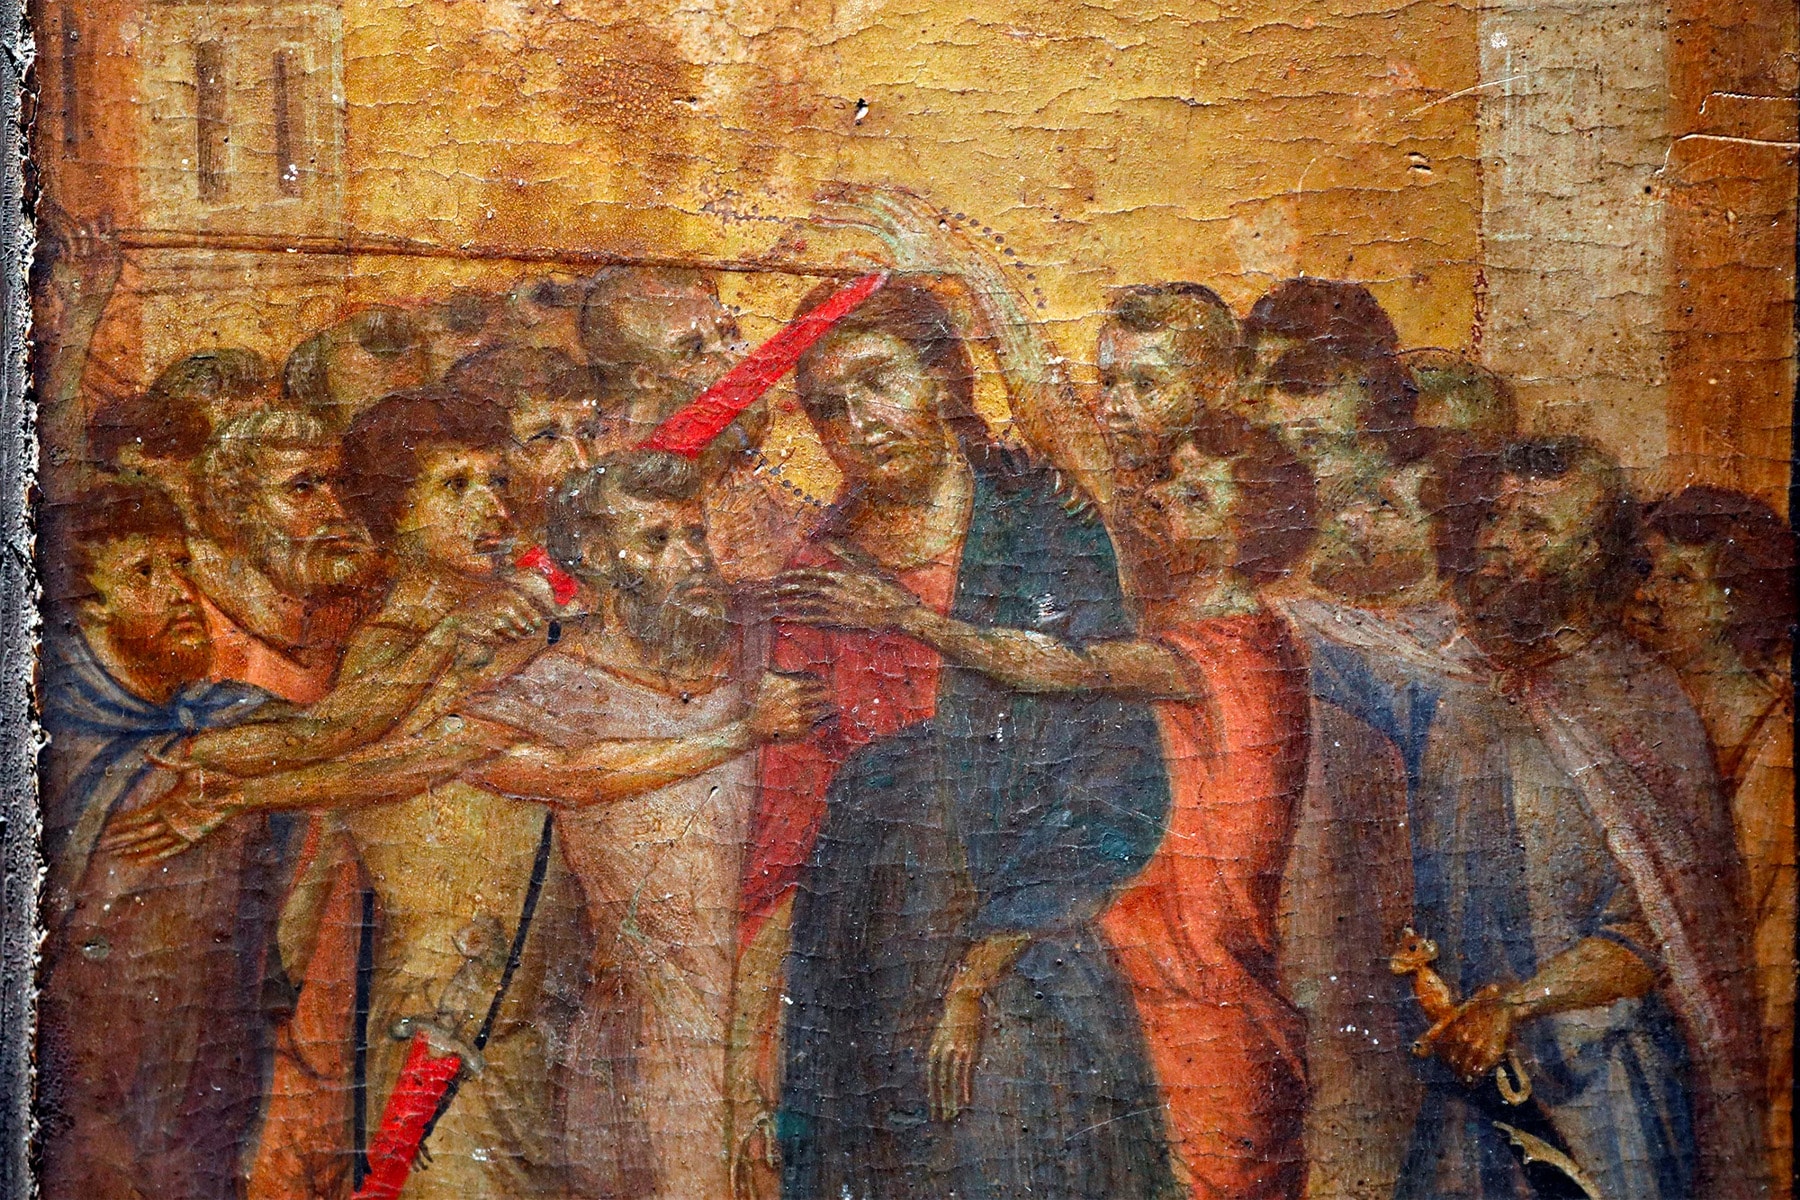 巴黎羅浮宮以 $2,600 萬美元收購廚房中找到之 Cimabue 畫作《Christ Mocked》